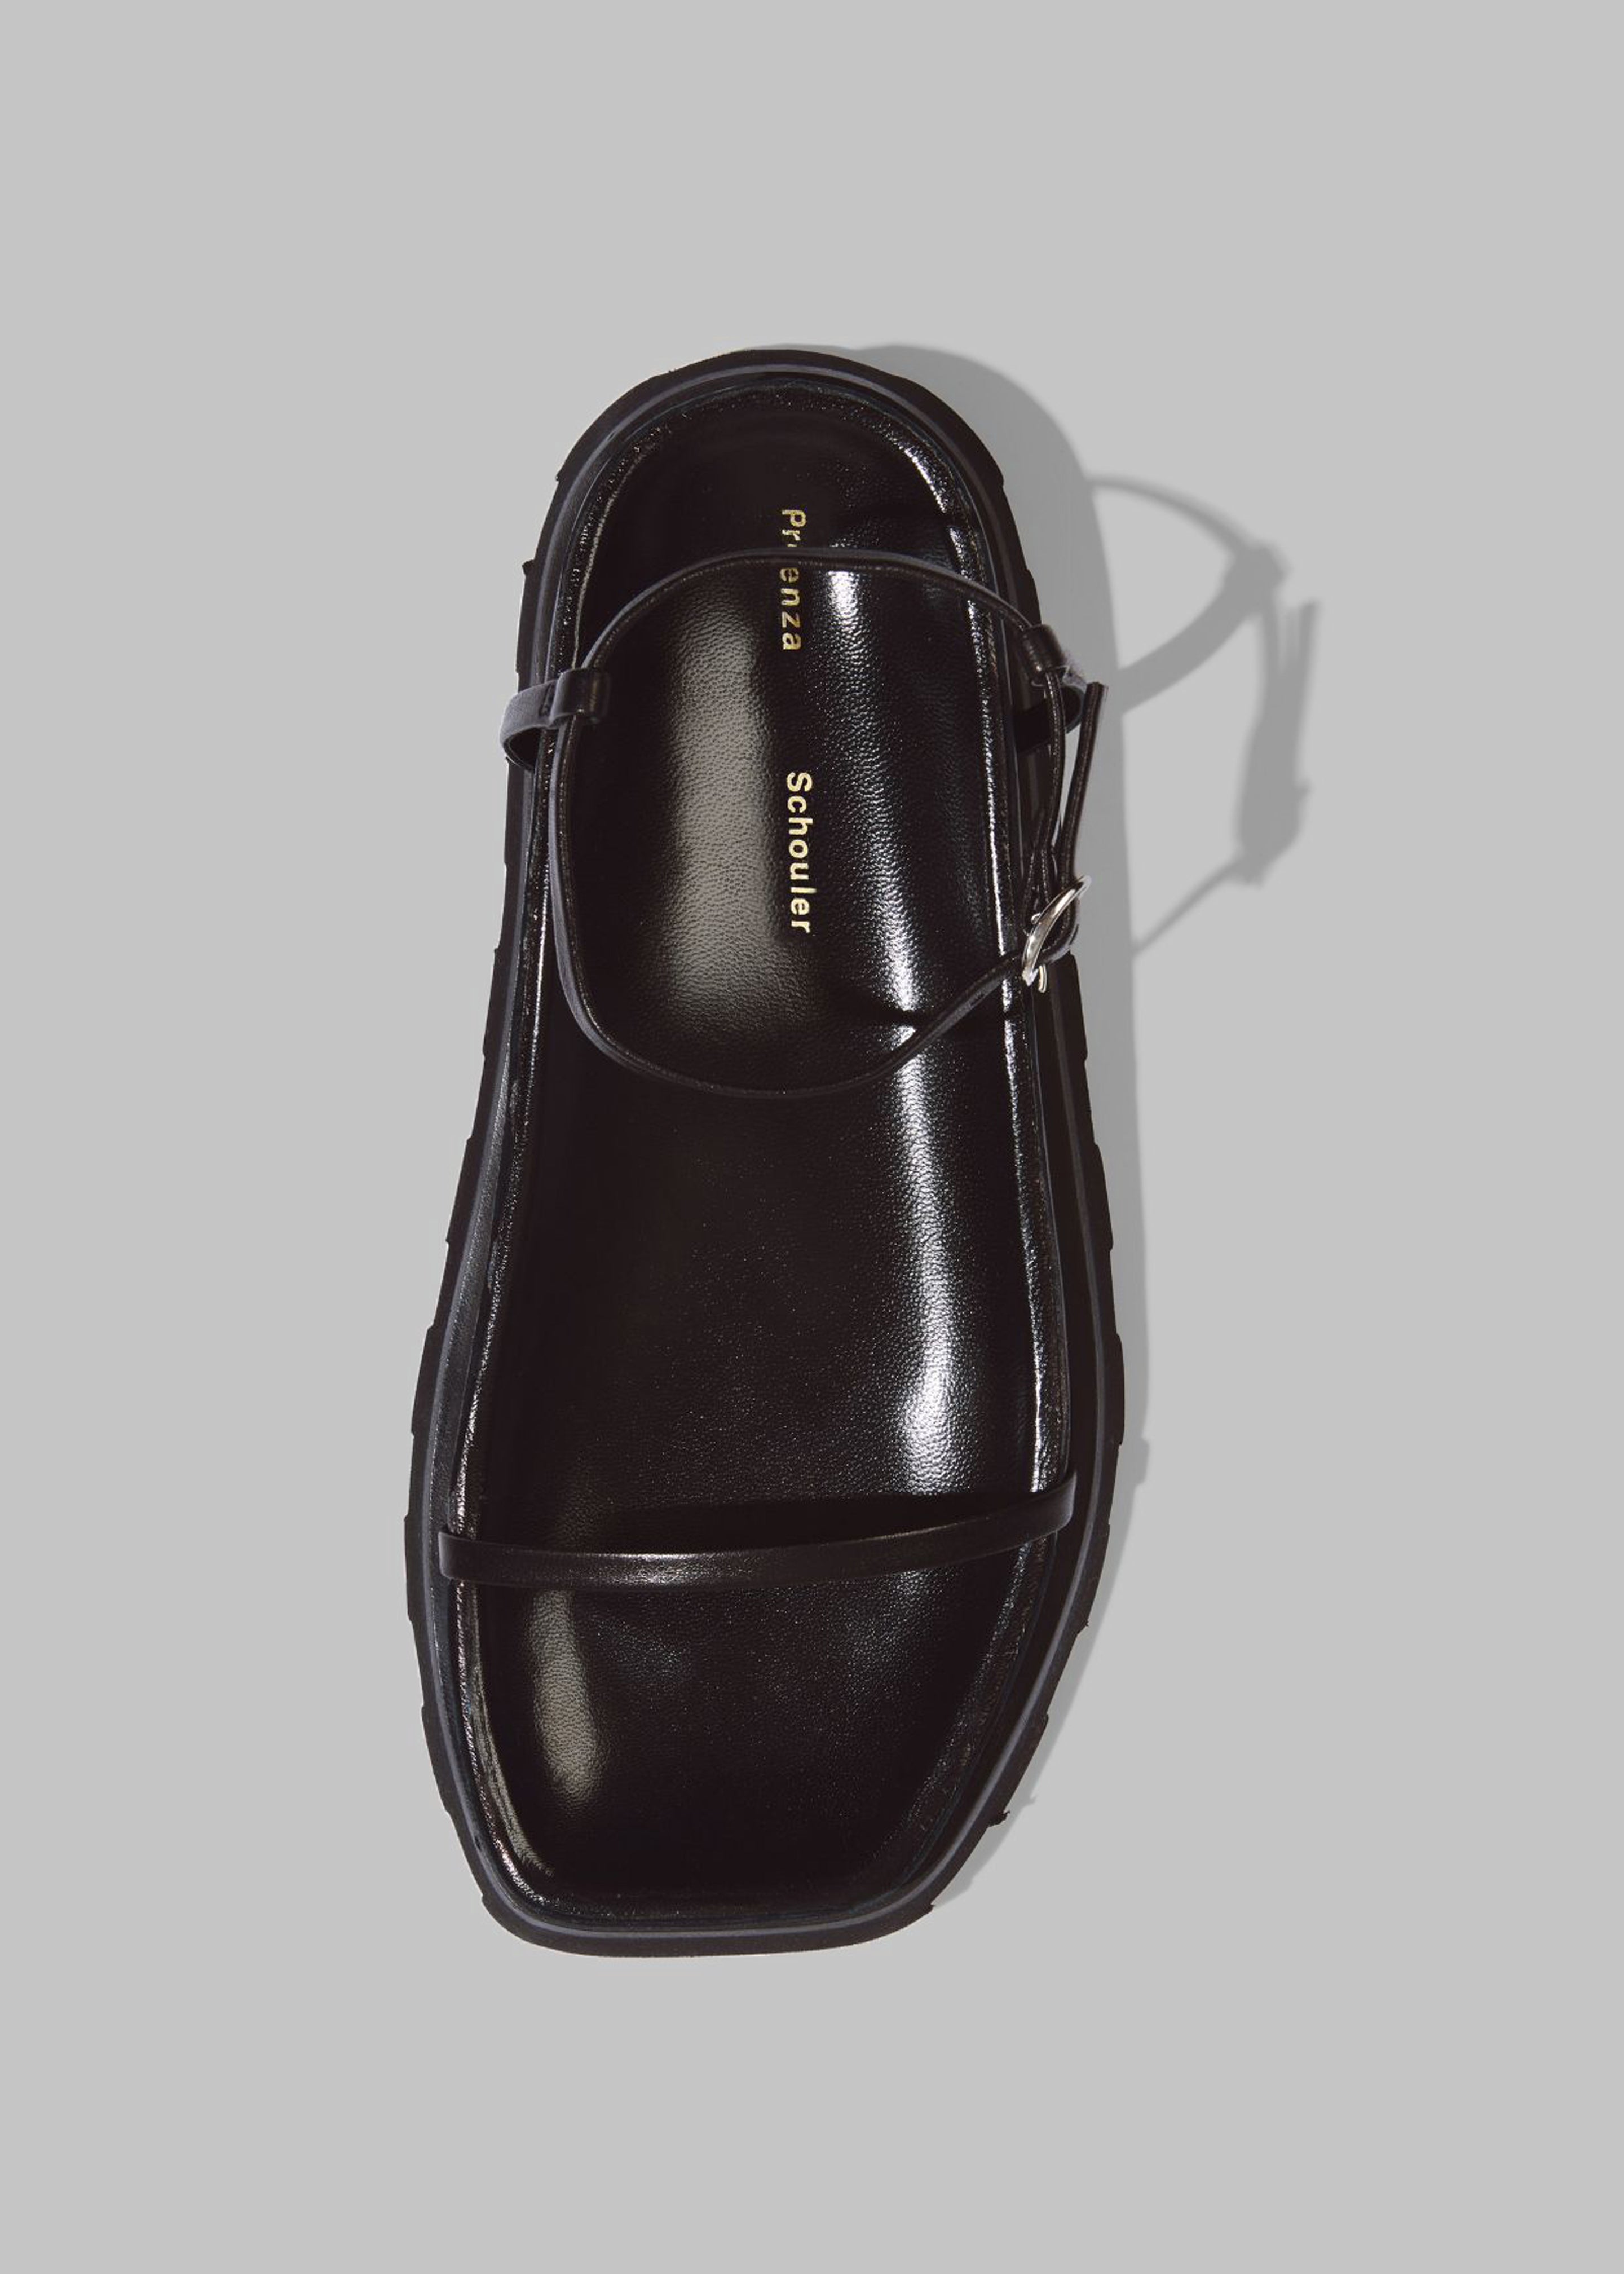 Proenza Schouler Forma Sandals - Black - 2